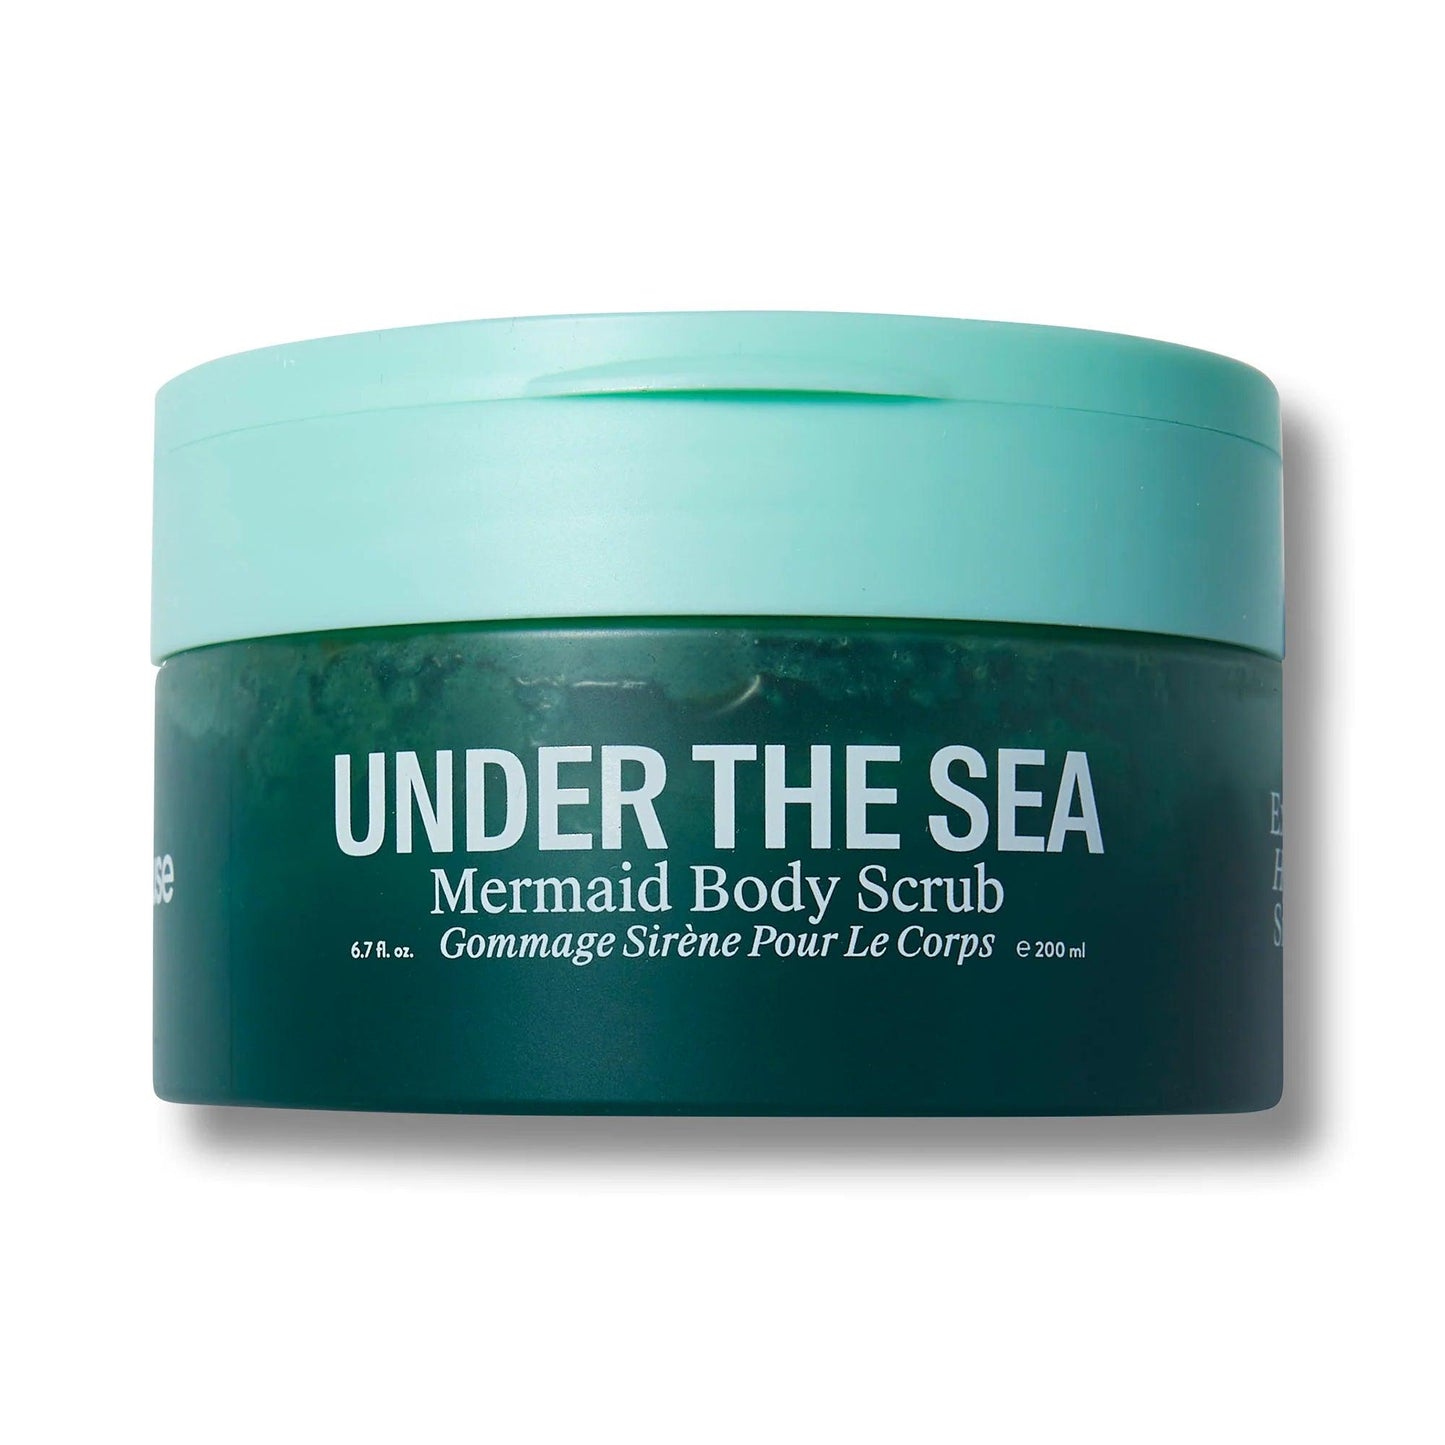 Under the Sea - Mermaid Body Scrub - Wylde Grey